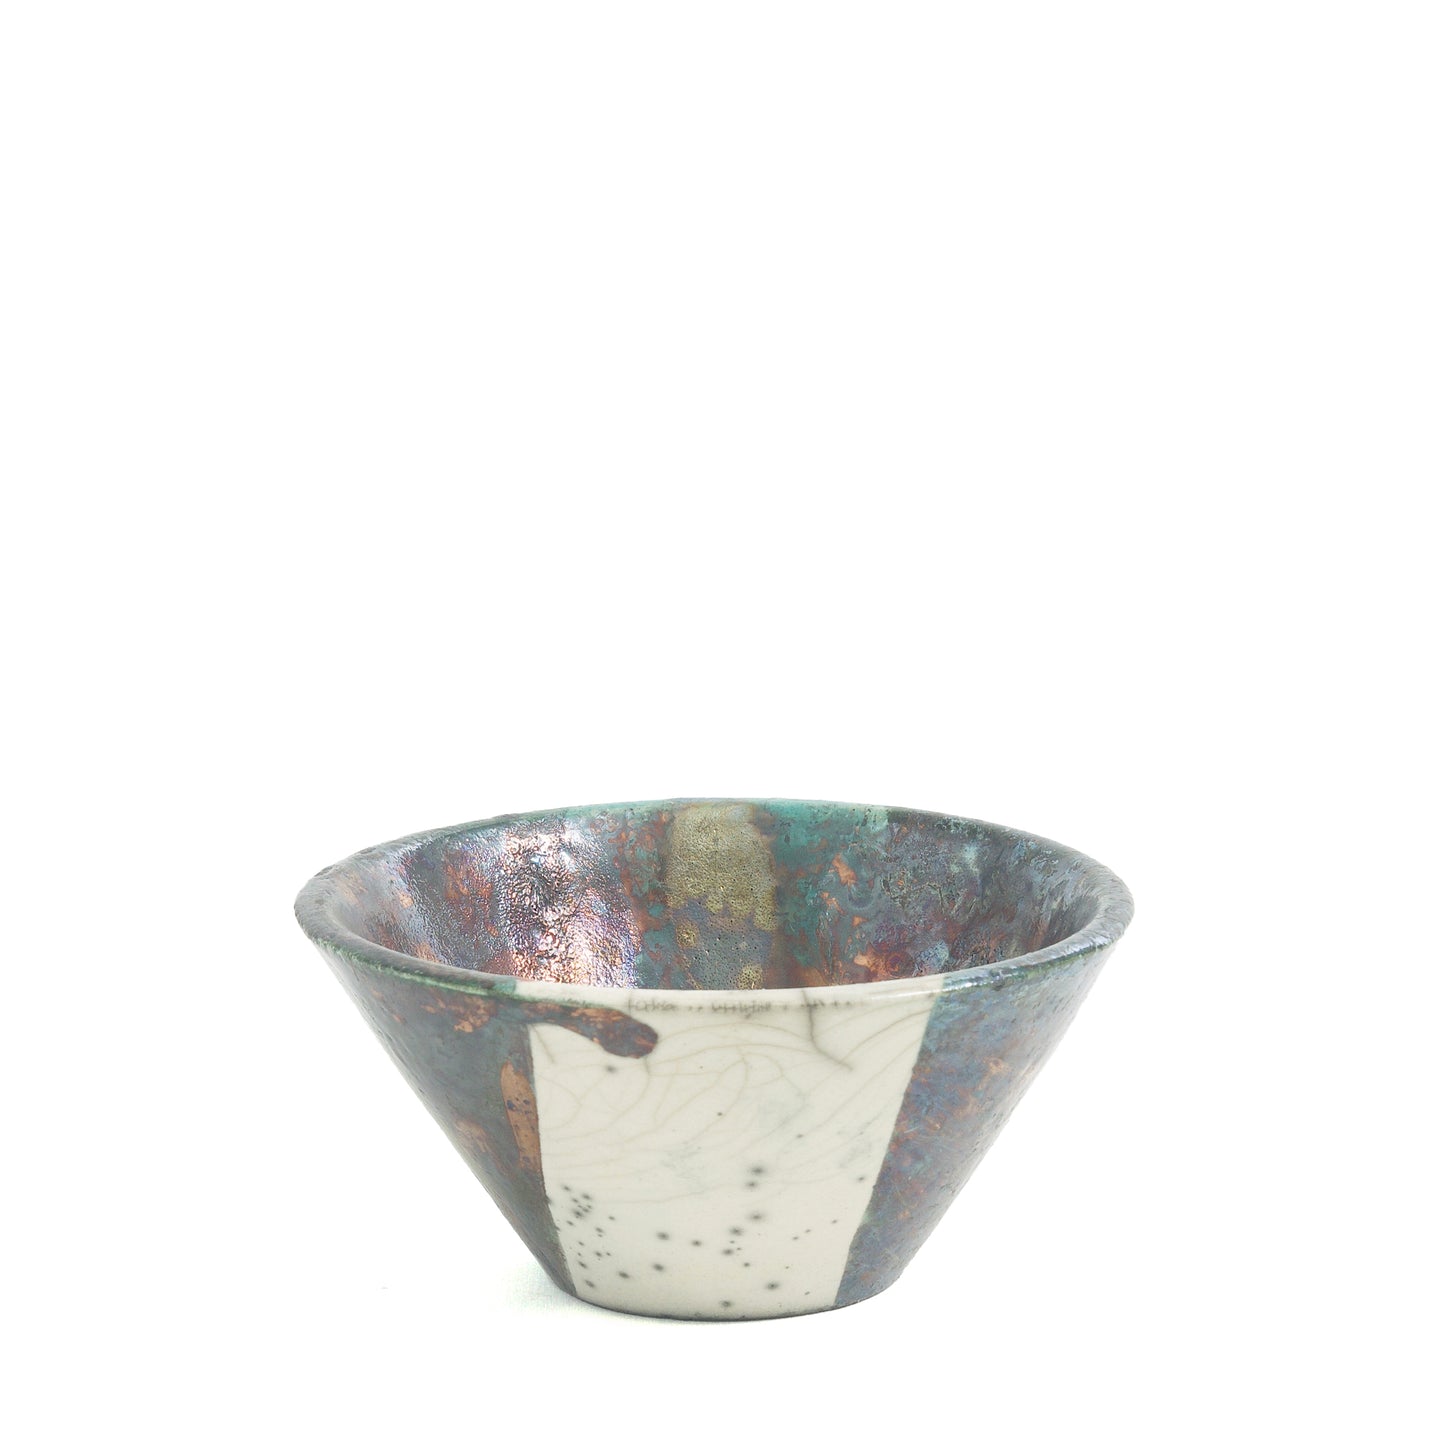 Japanese Minimalistic Aurora Set of 4 Bowls Raku Ceramics White Green Metal